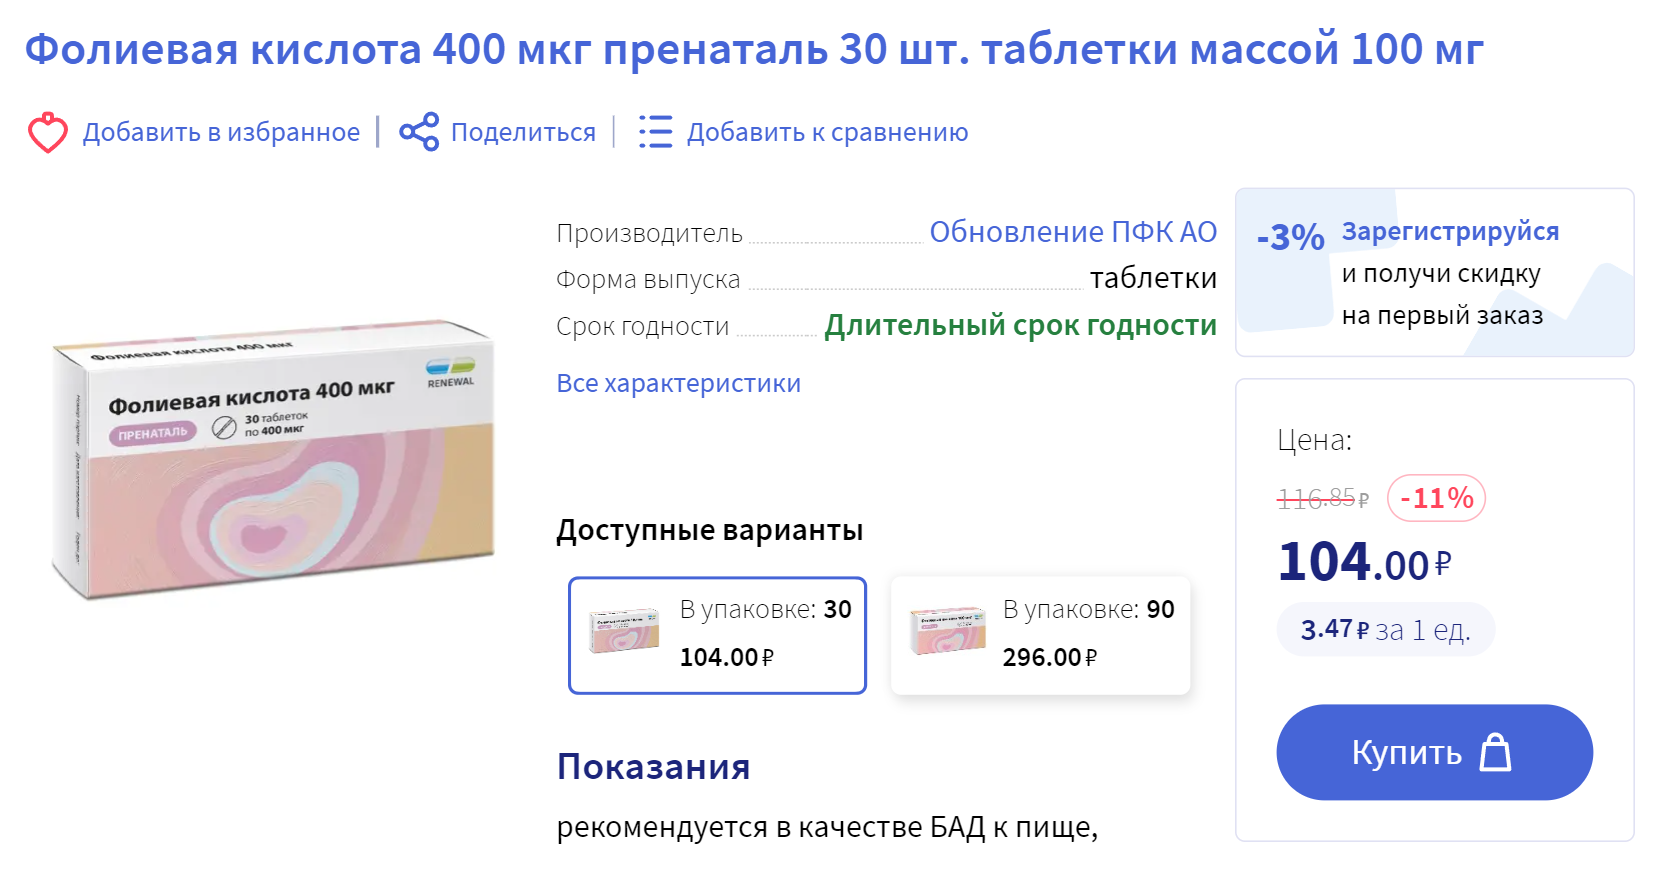 Фолиевую кислоту можно купить и в обычной аптеке — так даже дешевле. Женщинам в период беременности рекомендована доза 400 мкг в сутки, такой коробочки за 104 ₽ хватит на целый месяц. Источник: apteka.ru